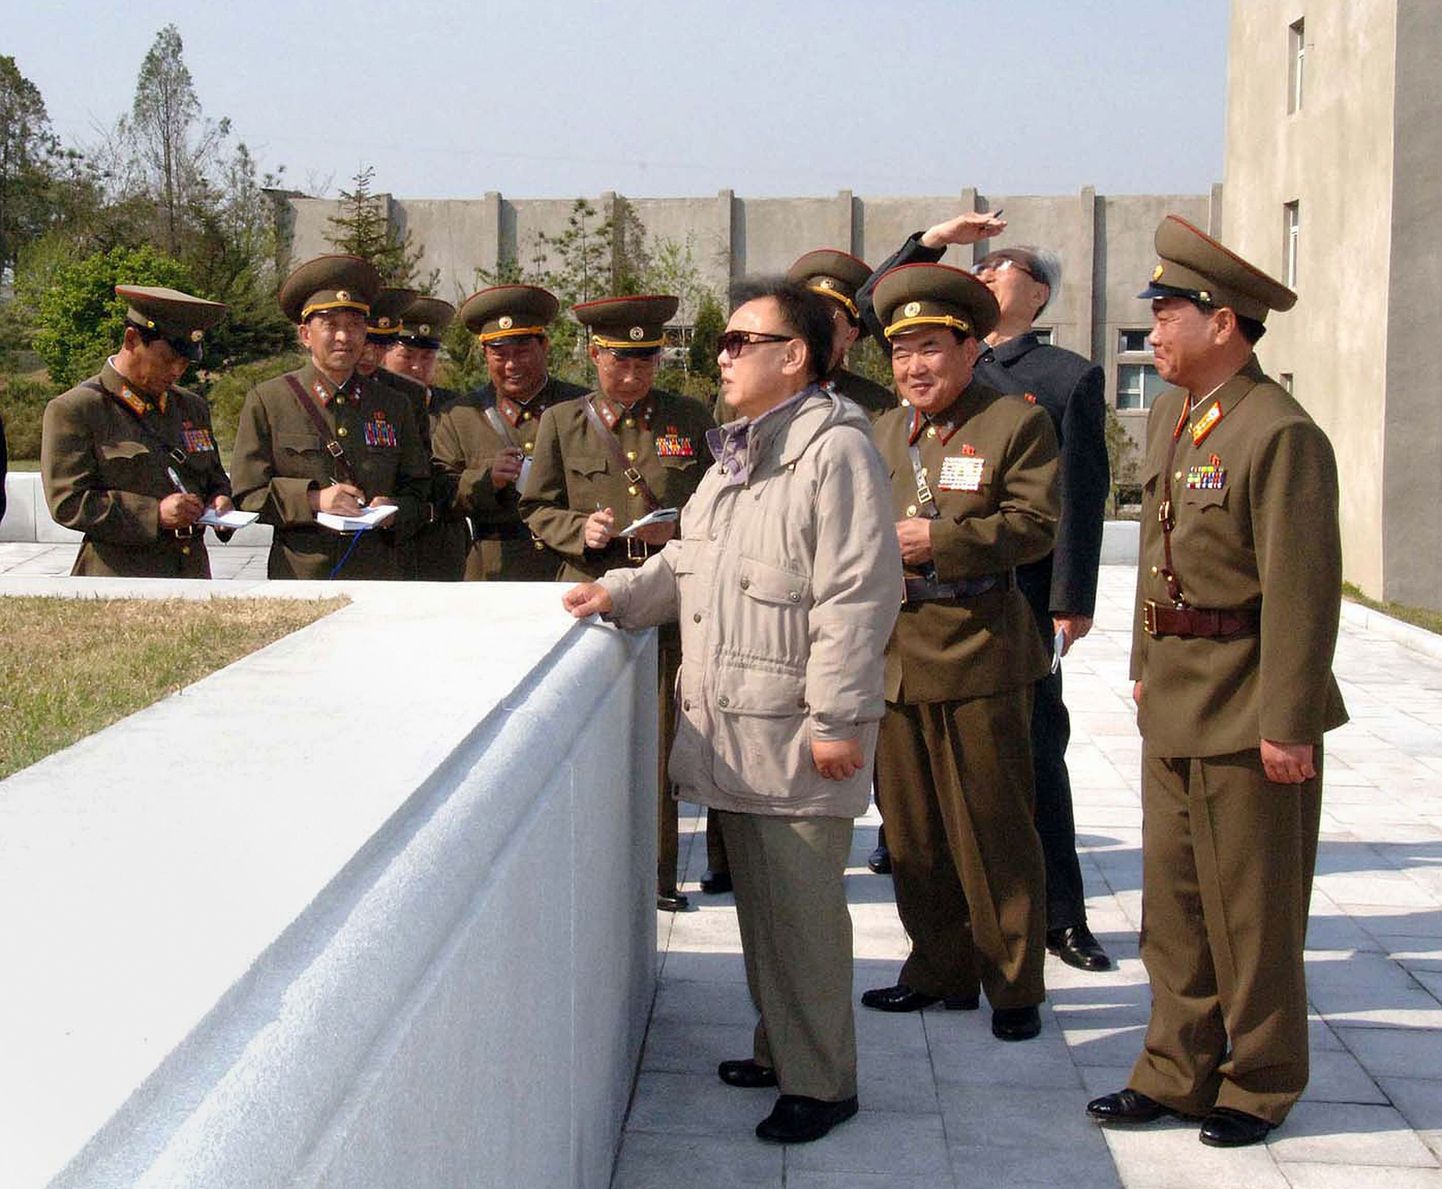 Sel eile avaldatud fotol näeme Põhja-Korea presidenti Kim Jong-Ili (heledas) teadmata kuupäeval tutvumas Korea rahvaülikooli armeeüksusega.